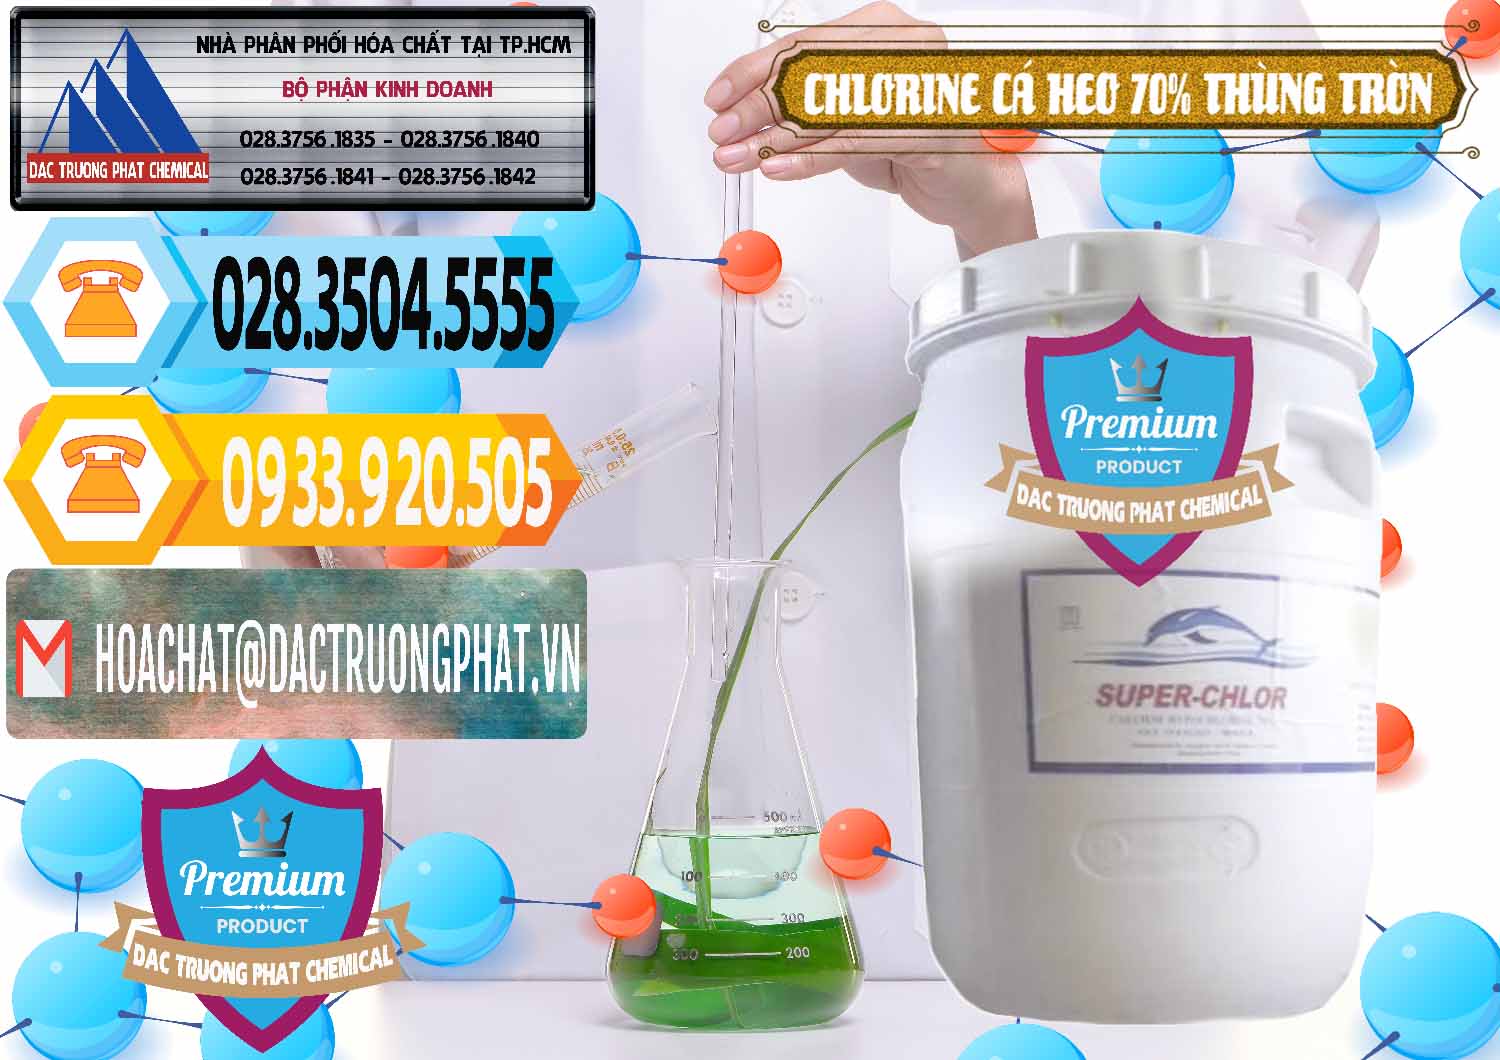 Cty bán - cung ứng Clorin - Chlorine Cá Heo 70% Super Chlor Thùng Tròn Nắp Trắng Trung Quốc China - 0239 - Nơi cung ứng và phân phối hóa chất tại TP.HCM - hoachattayrua.net